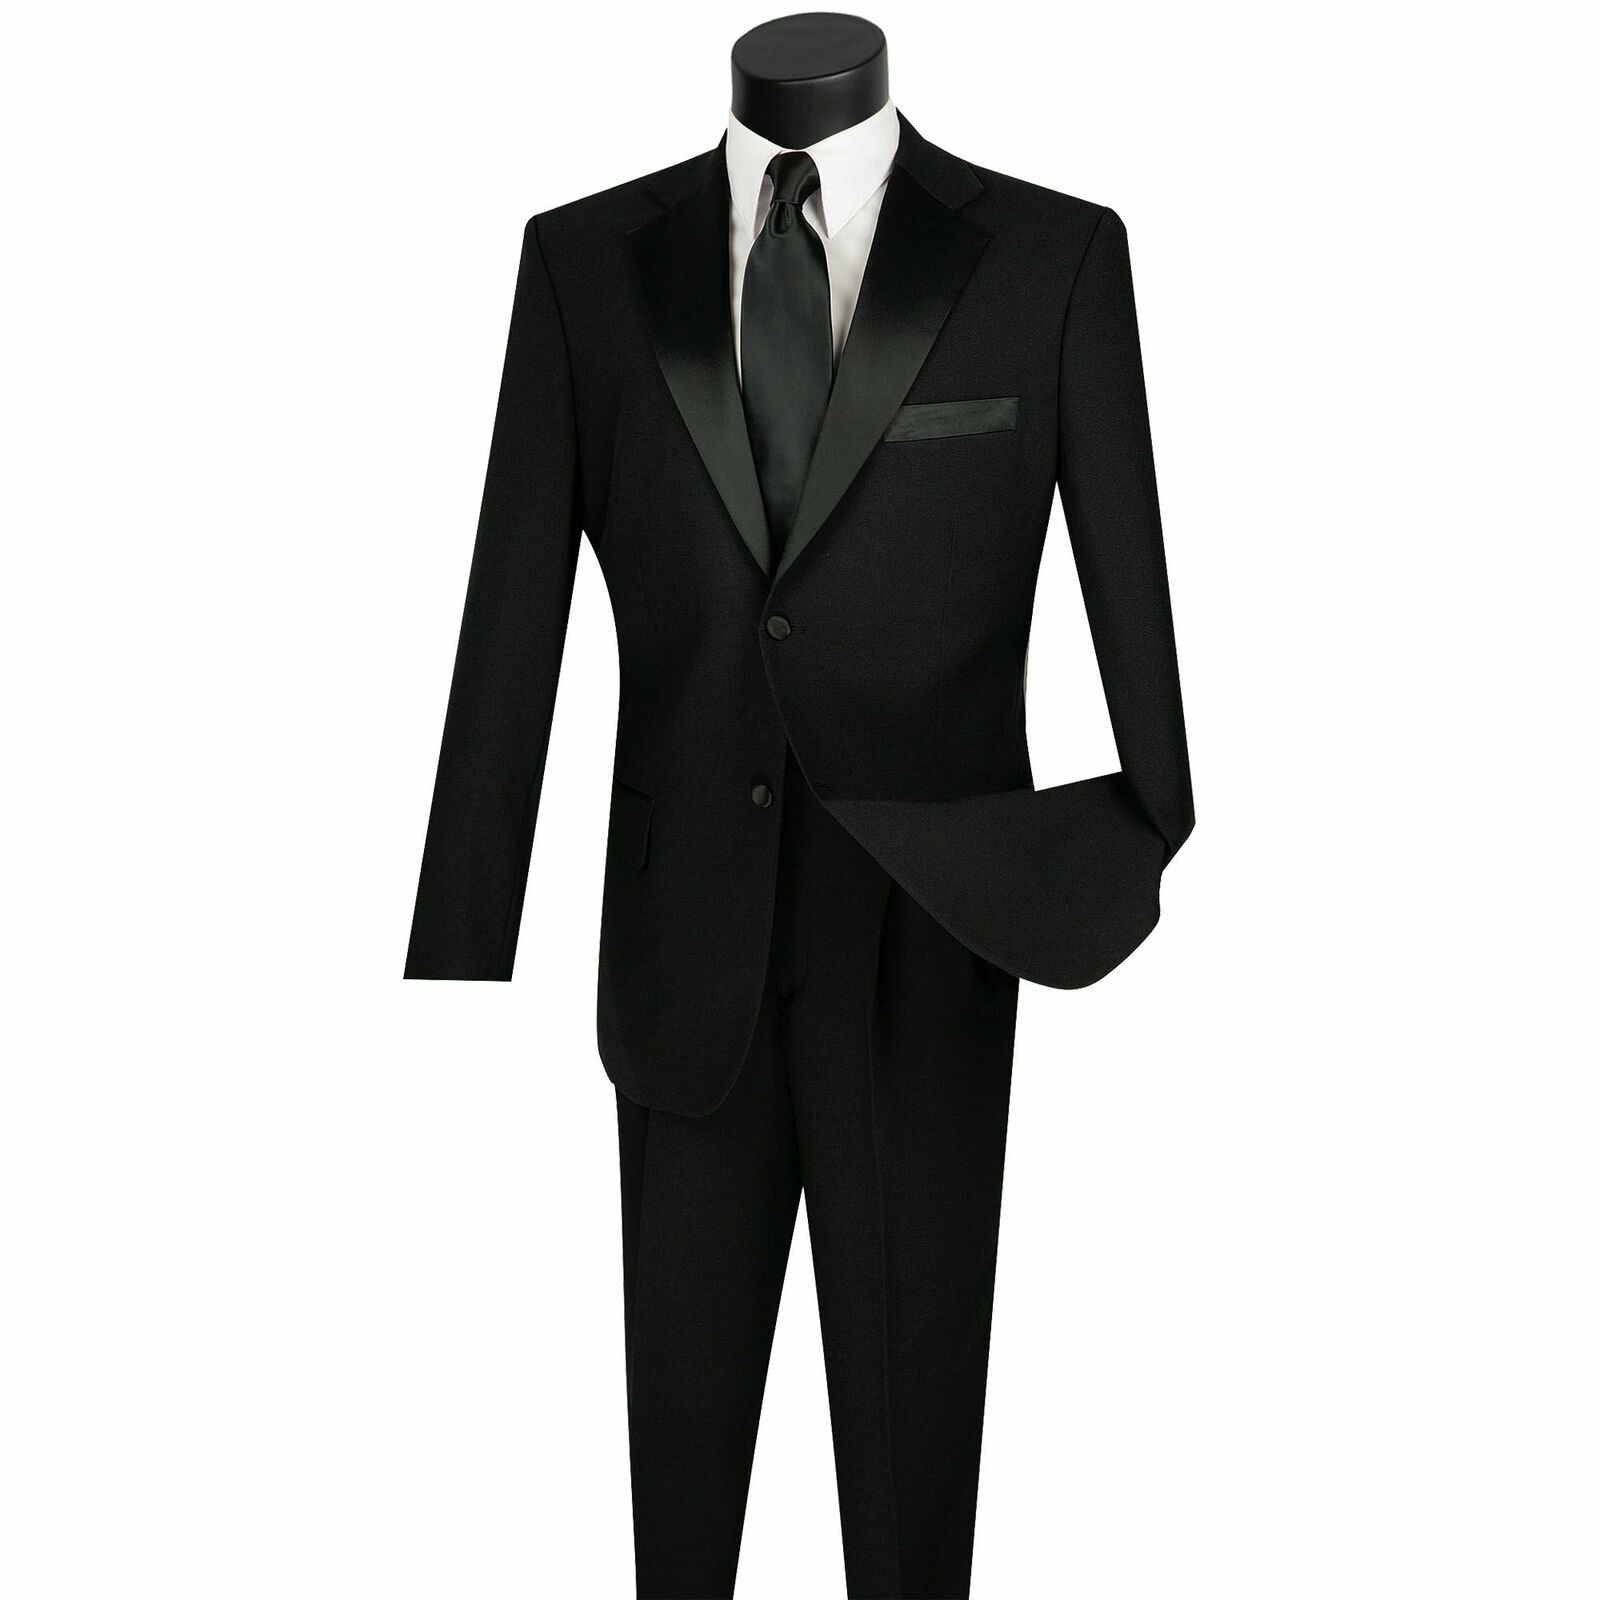 LUCCI Men's Black Classic Fit Formal Tuxedo Suit w/ Sateen Lapel & Trim NEW